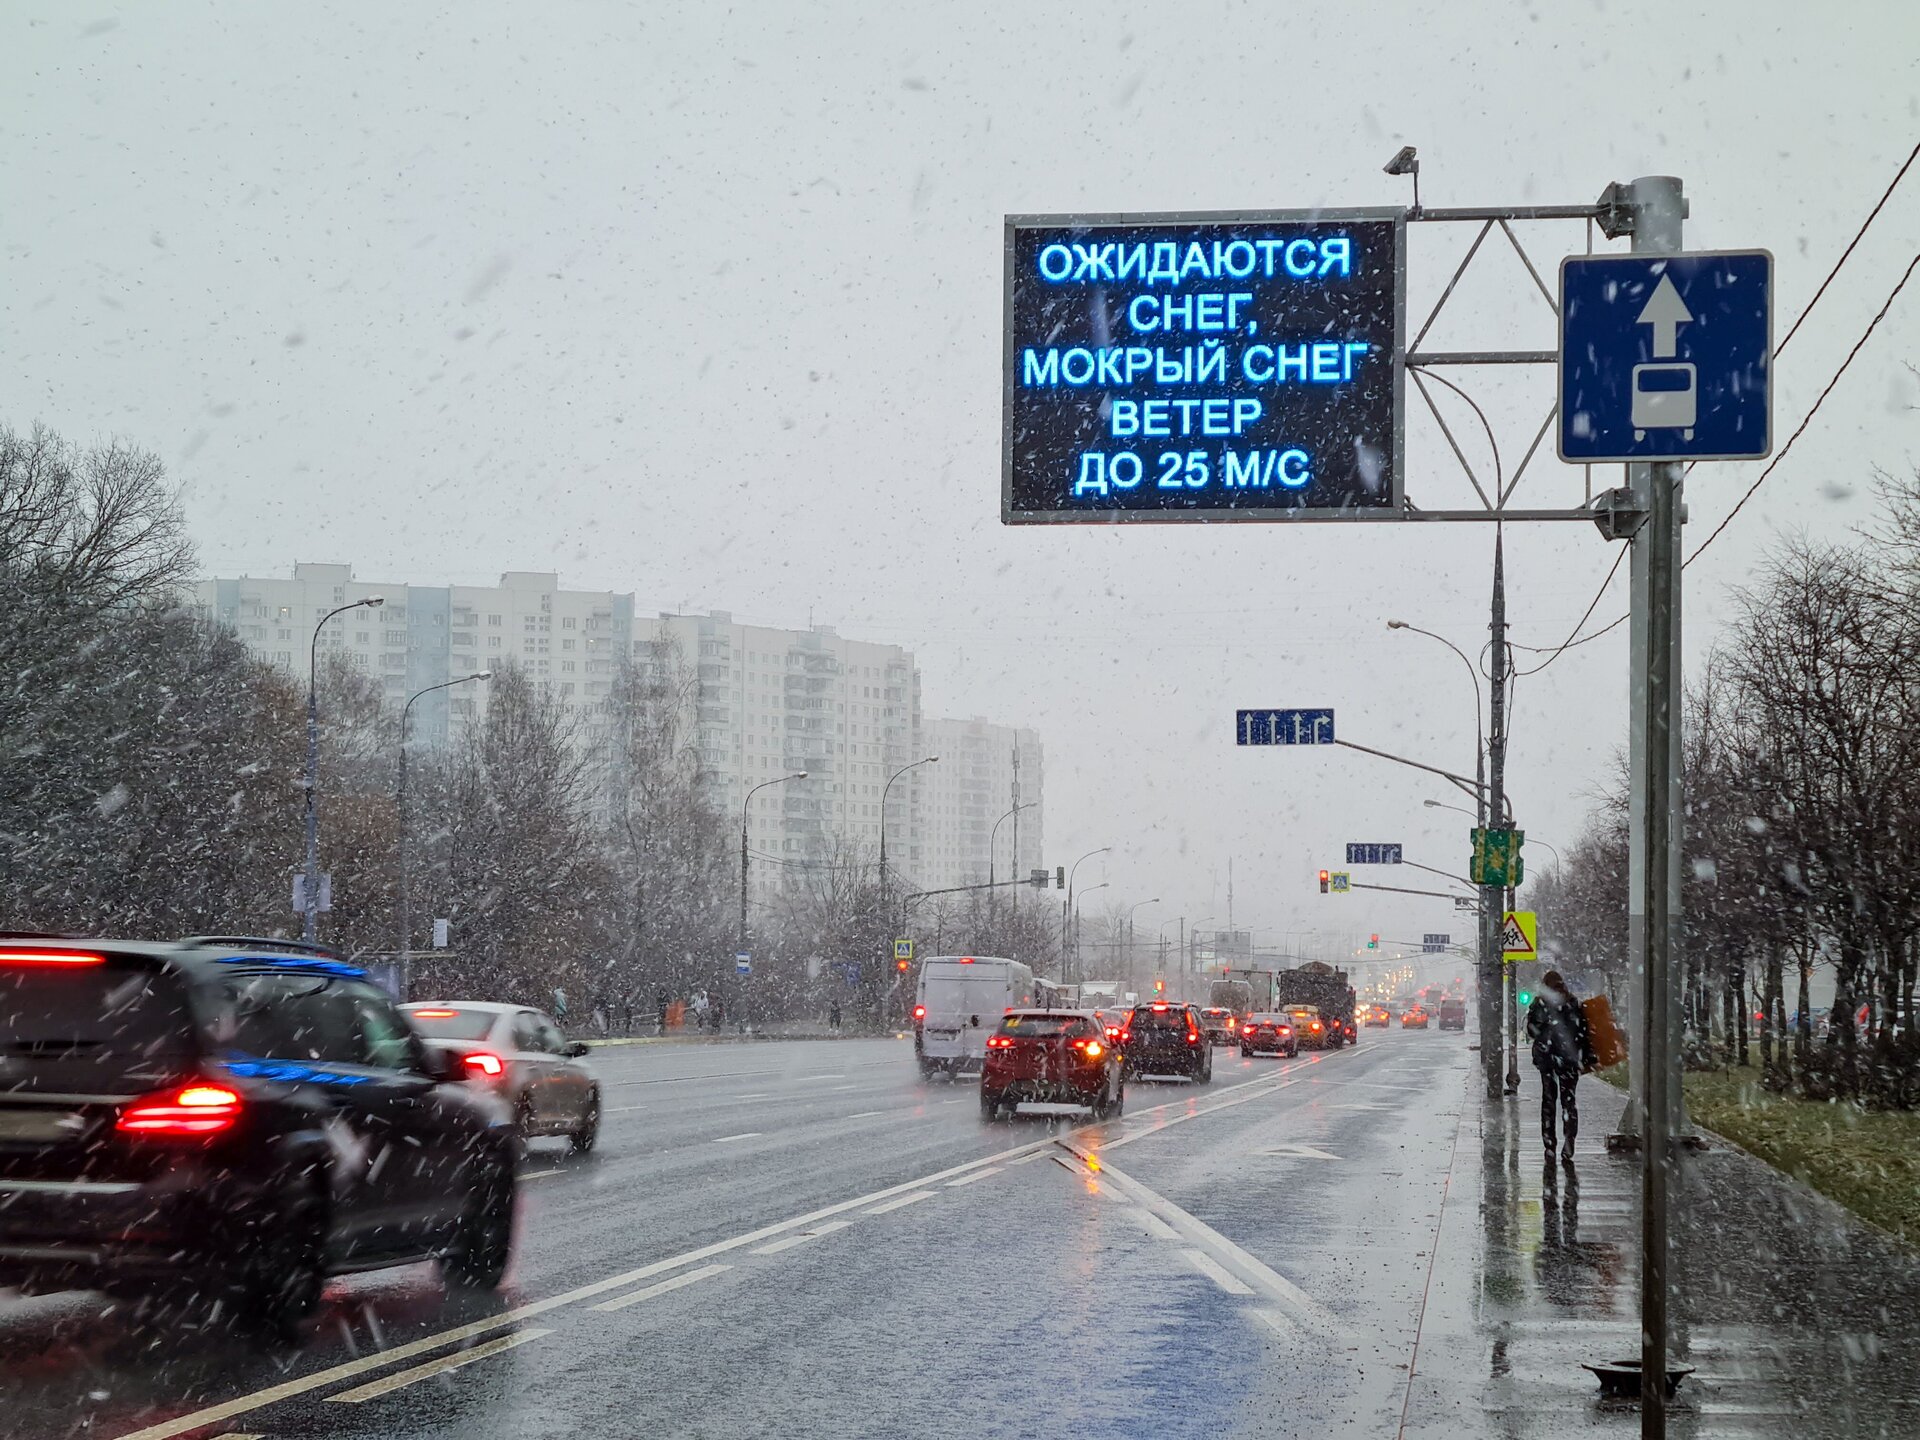 МЧС опубликовало экстренное предупреждение из-за снегопада в Москве